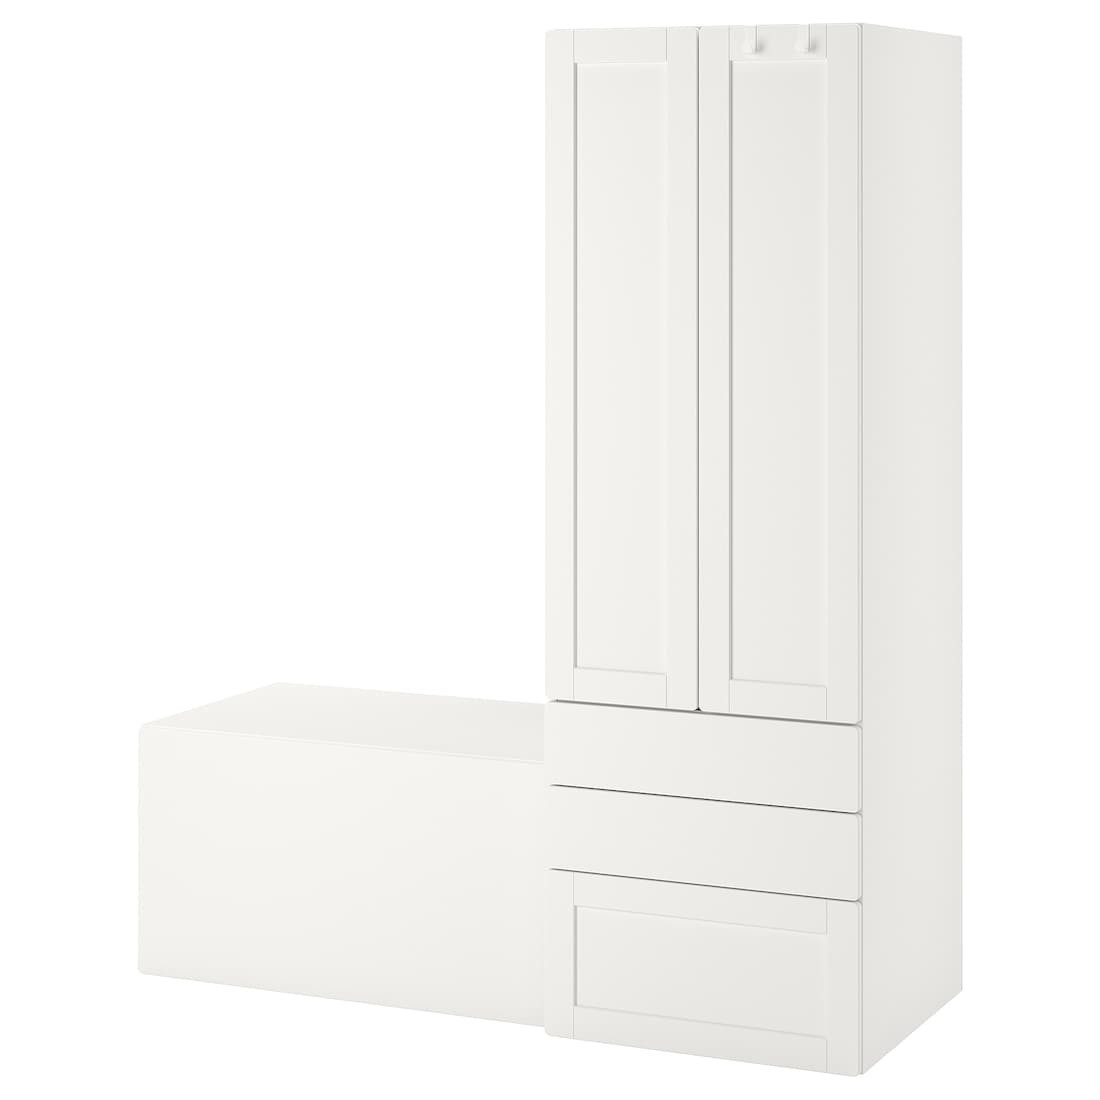 IKEA SMÅSTAD СМОСТАД / PLATSA ПЛАТСА Стеллаж, белый белая рамка / со скамьей, 150x57x181 см 39431230 394.312.30